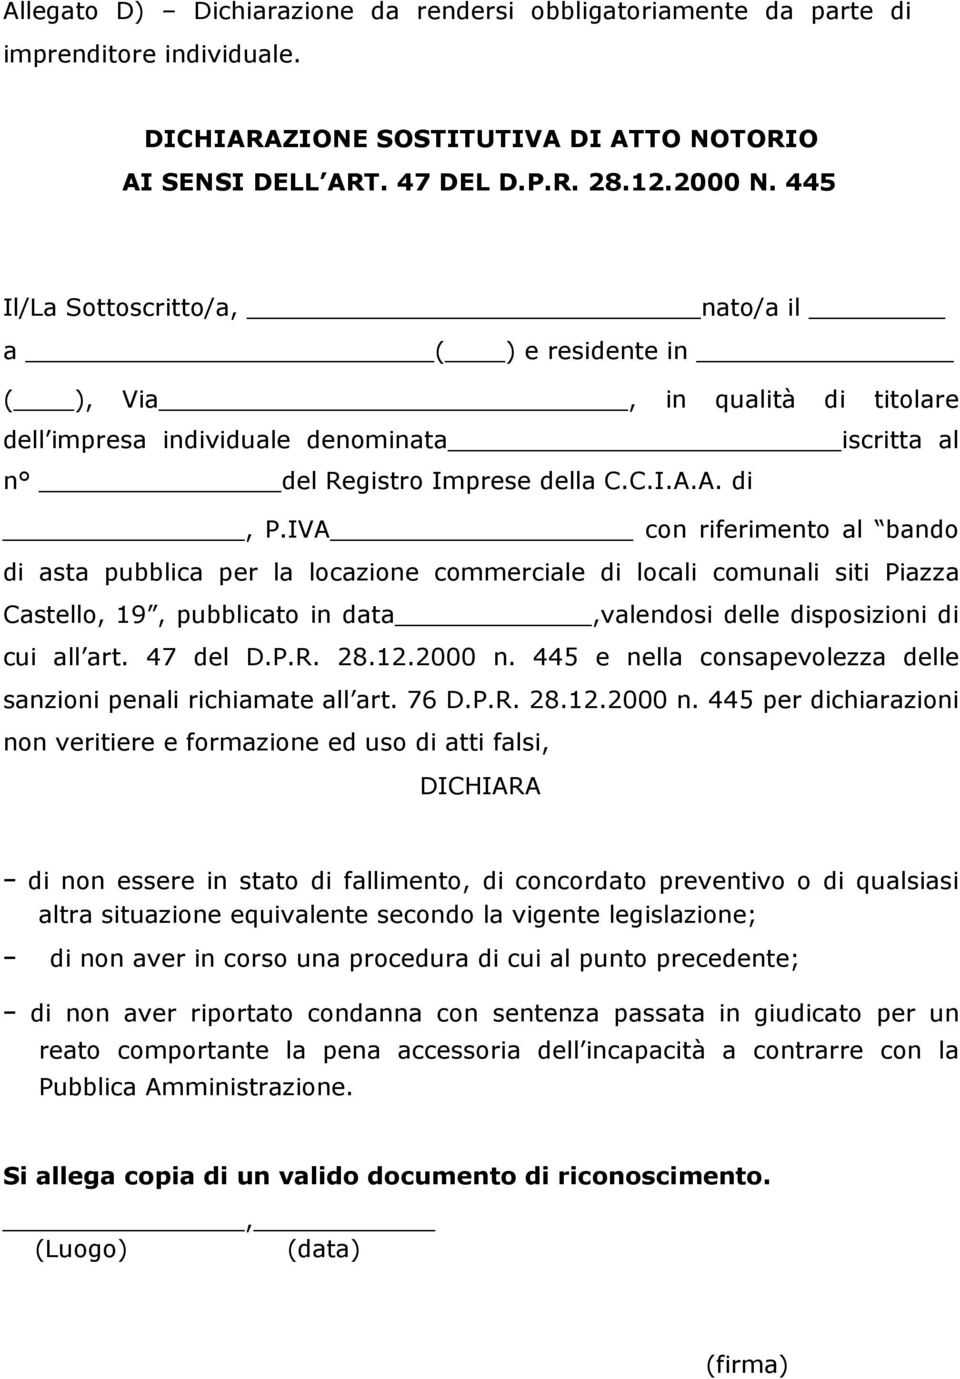 IVA con riferimento al bando di asta pubblica per la locazione commerciale di locali comunali siti Piazza Castello, 19, pubblicato in data,valendosi delle disposizioni di cui all art. 47 del D.P.R.